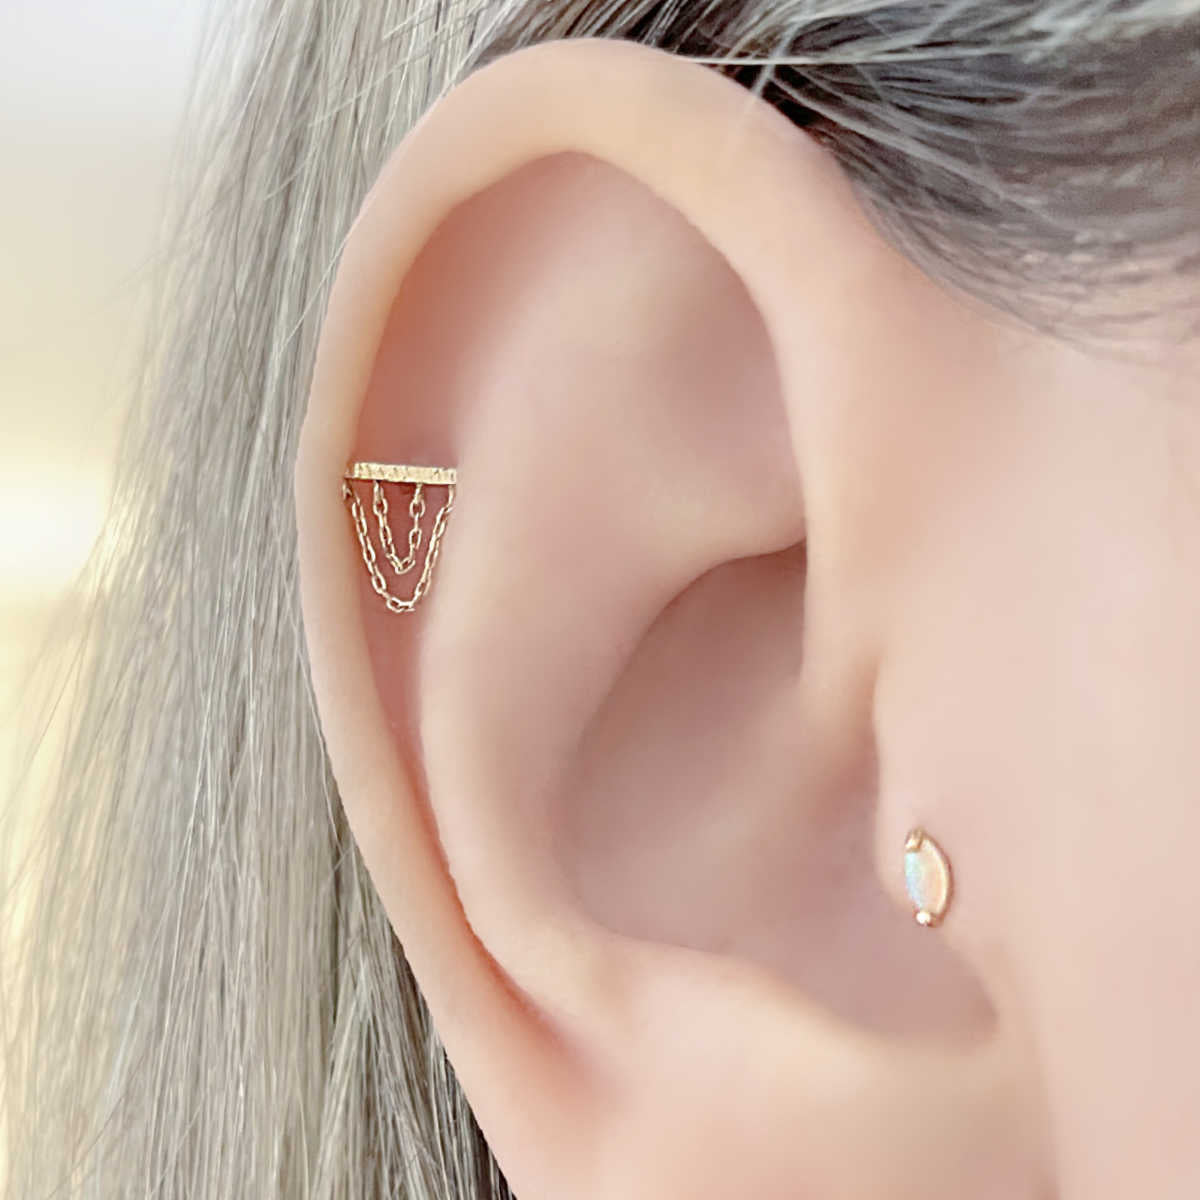 Helix Piercing Gold, Helix Earring, Pave Cartilage Earrings, Helix Earring  Hoop, Cartilage Earring Hoop CZ Clear Black Colorful - Etsy | Helix  oorbellen, Kraakbeen-oorbellen, Gouden oorbellen